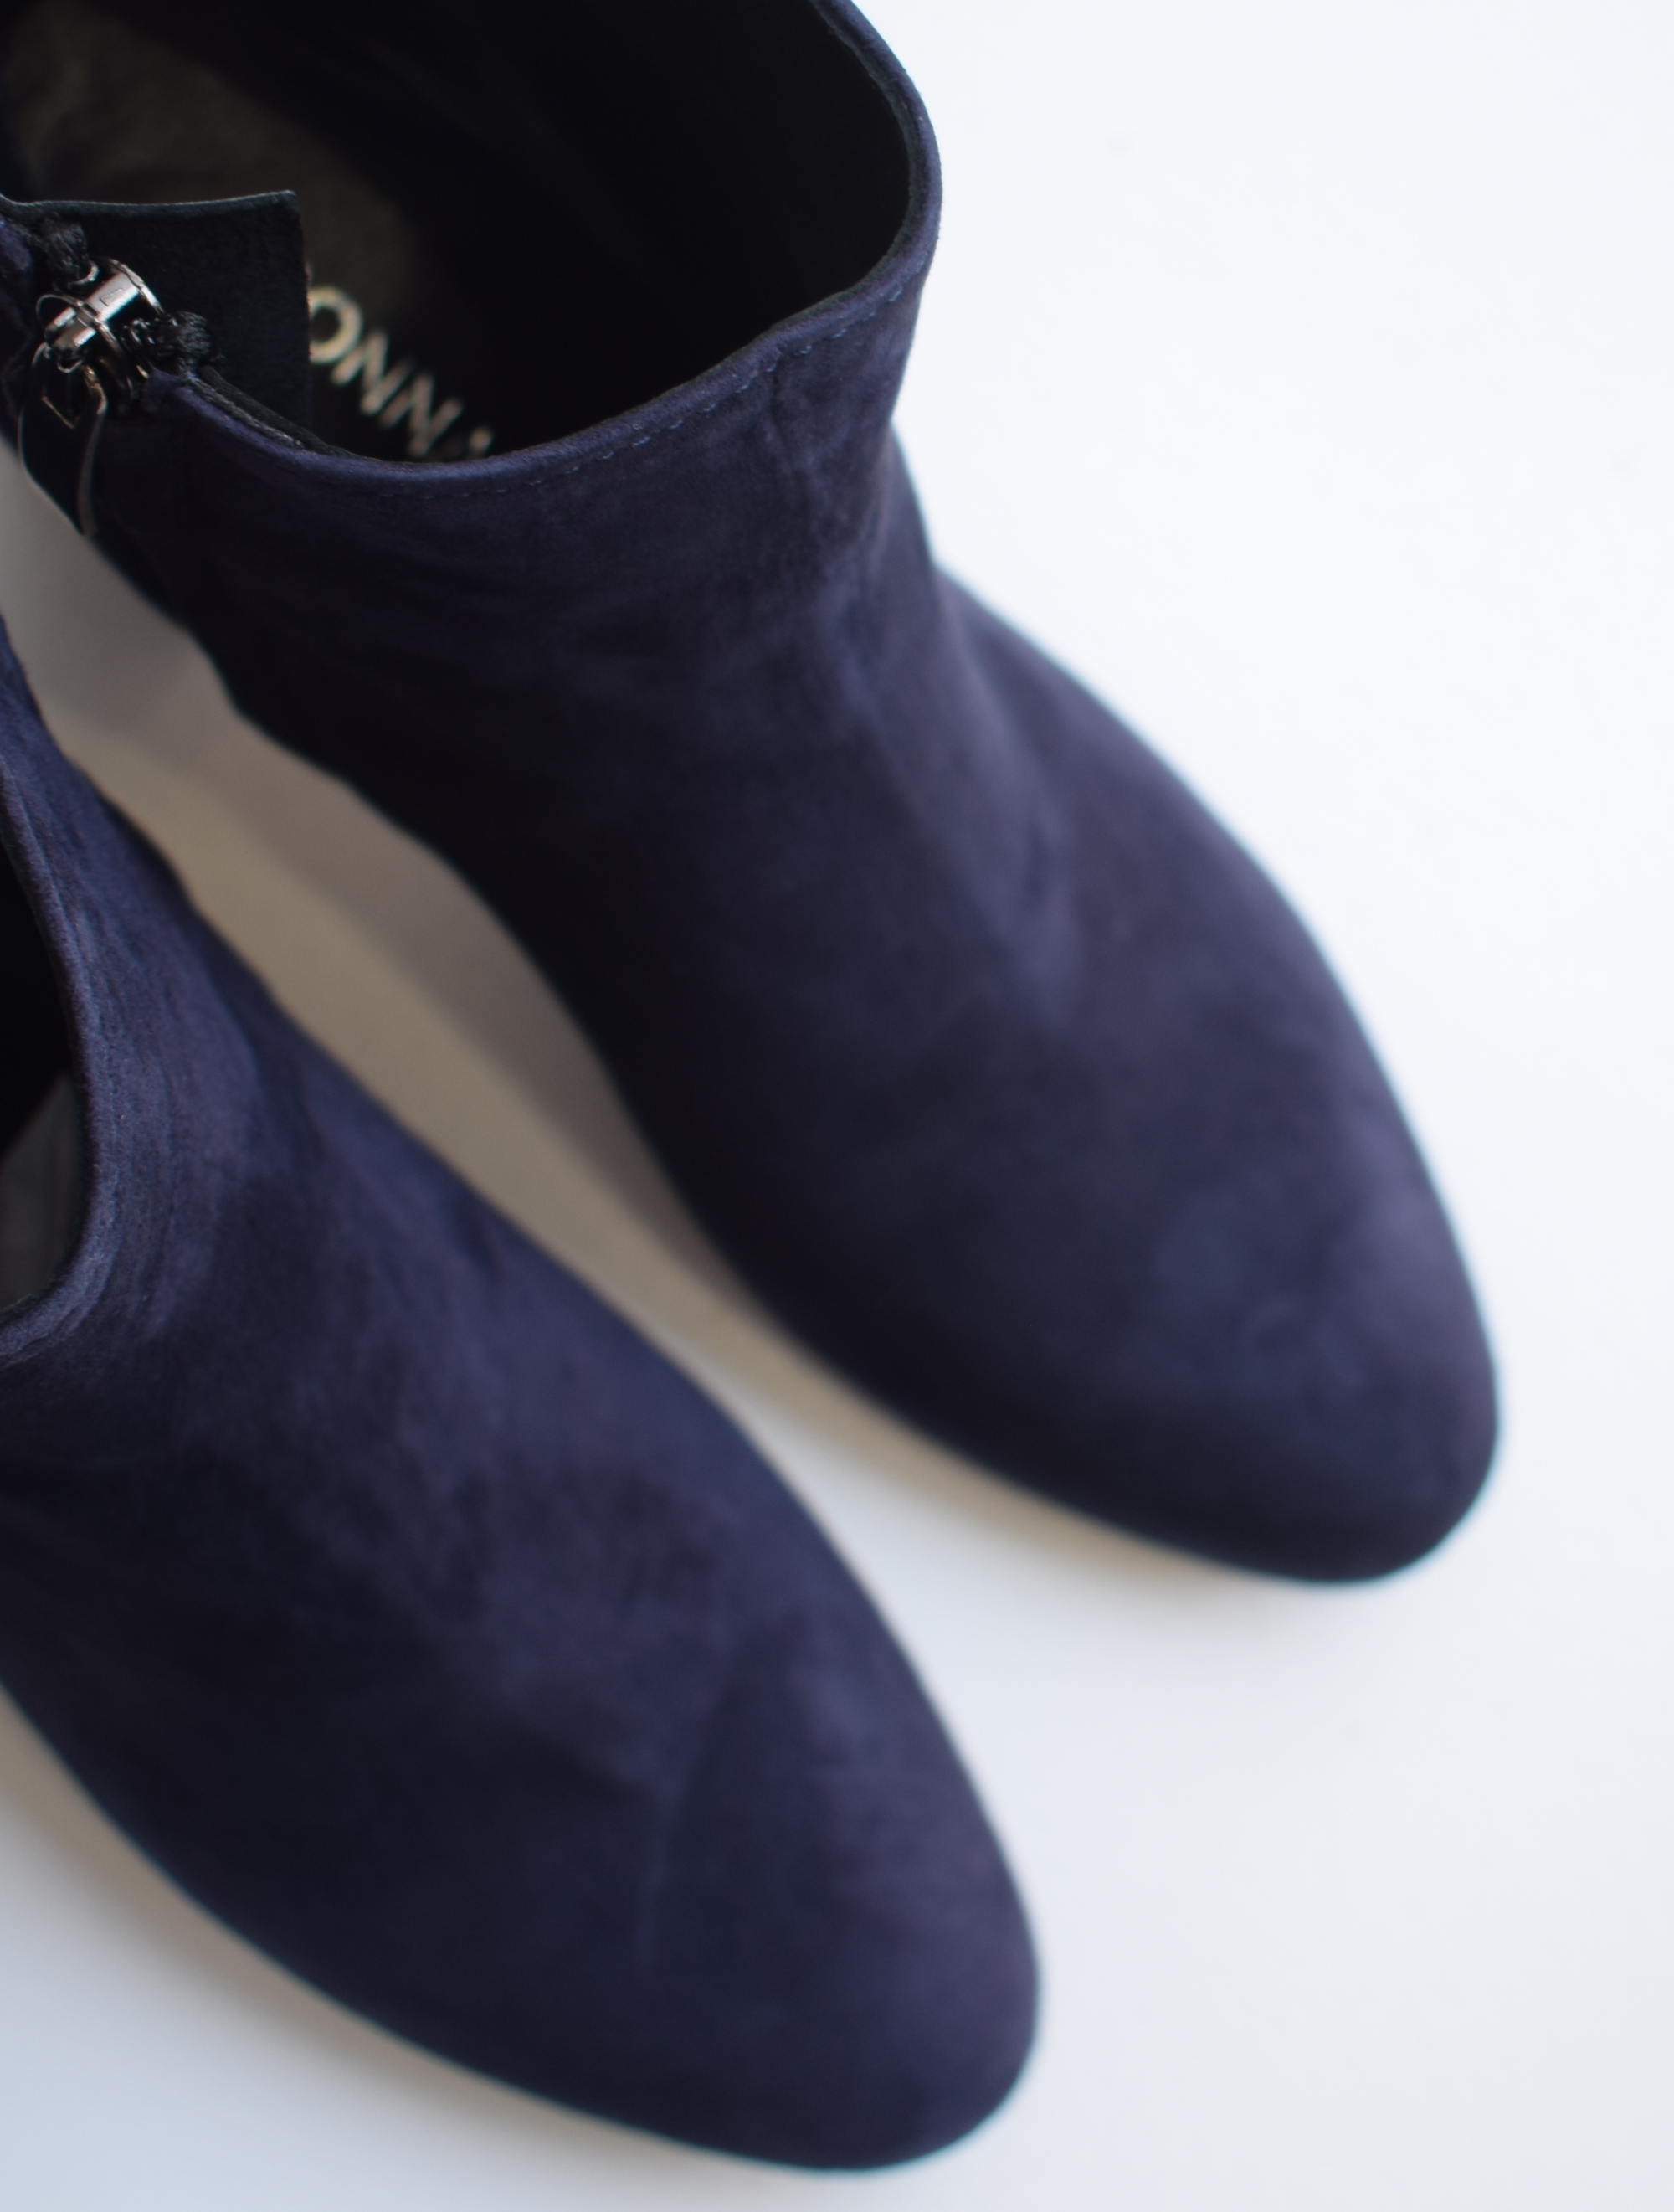 Navy suede block heel boots with side zip